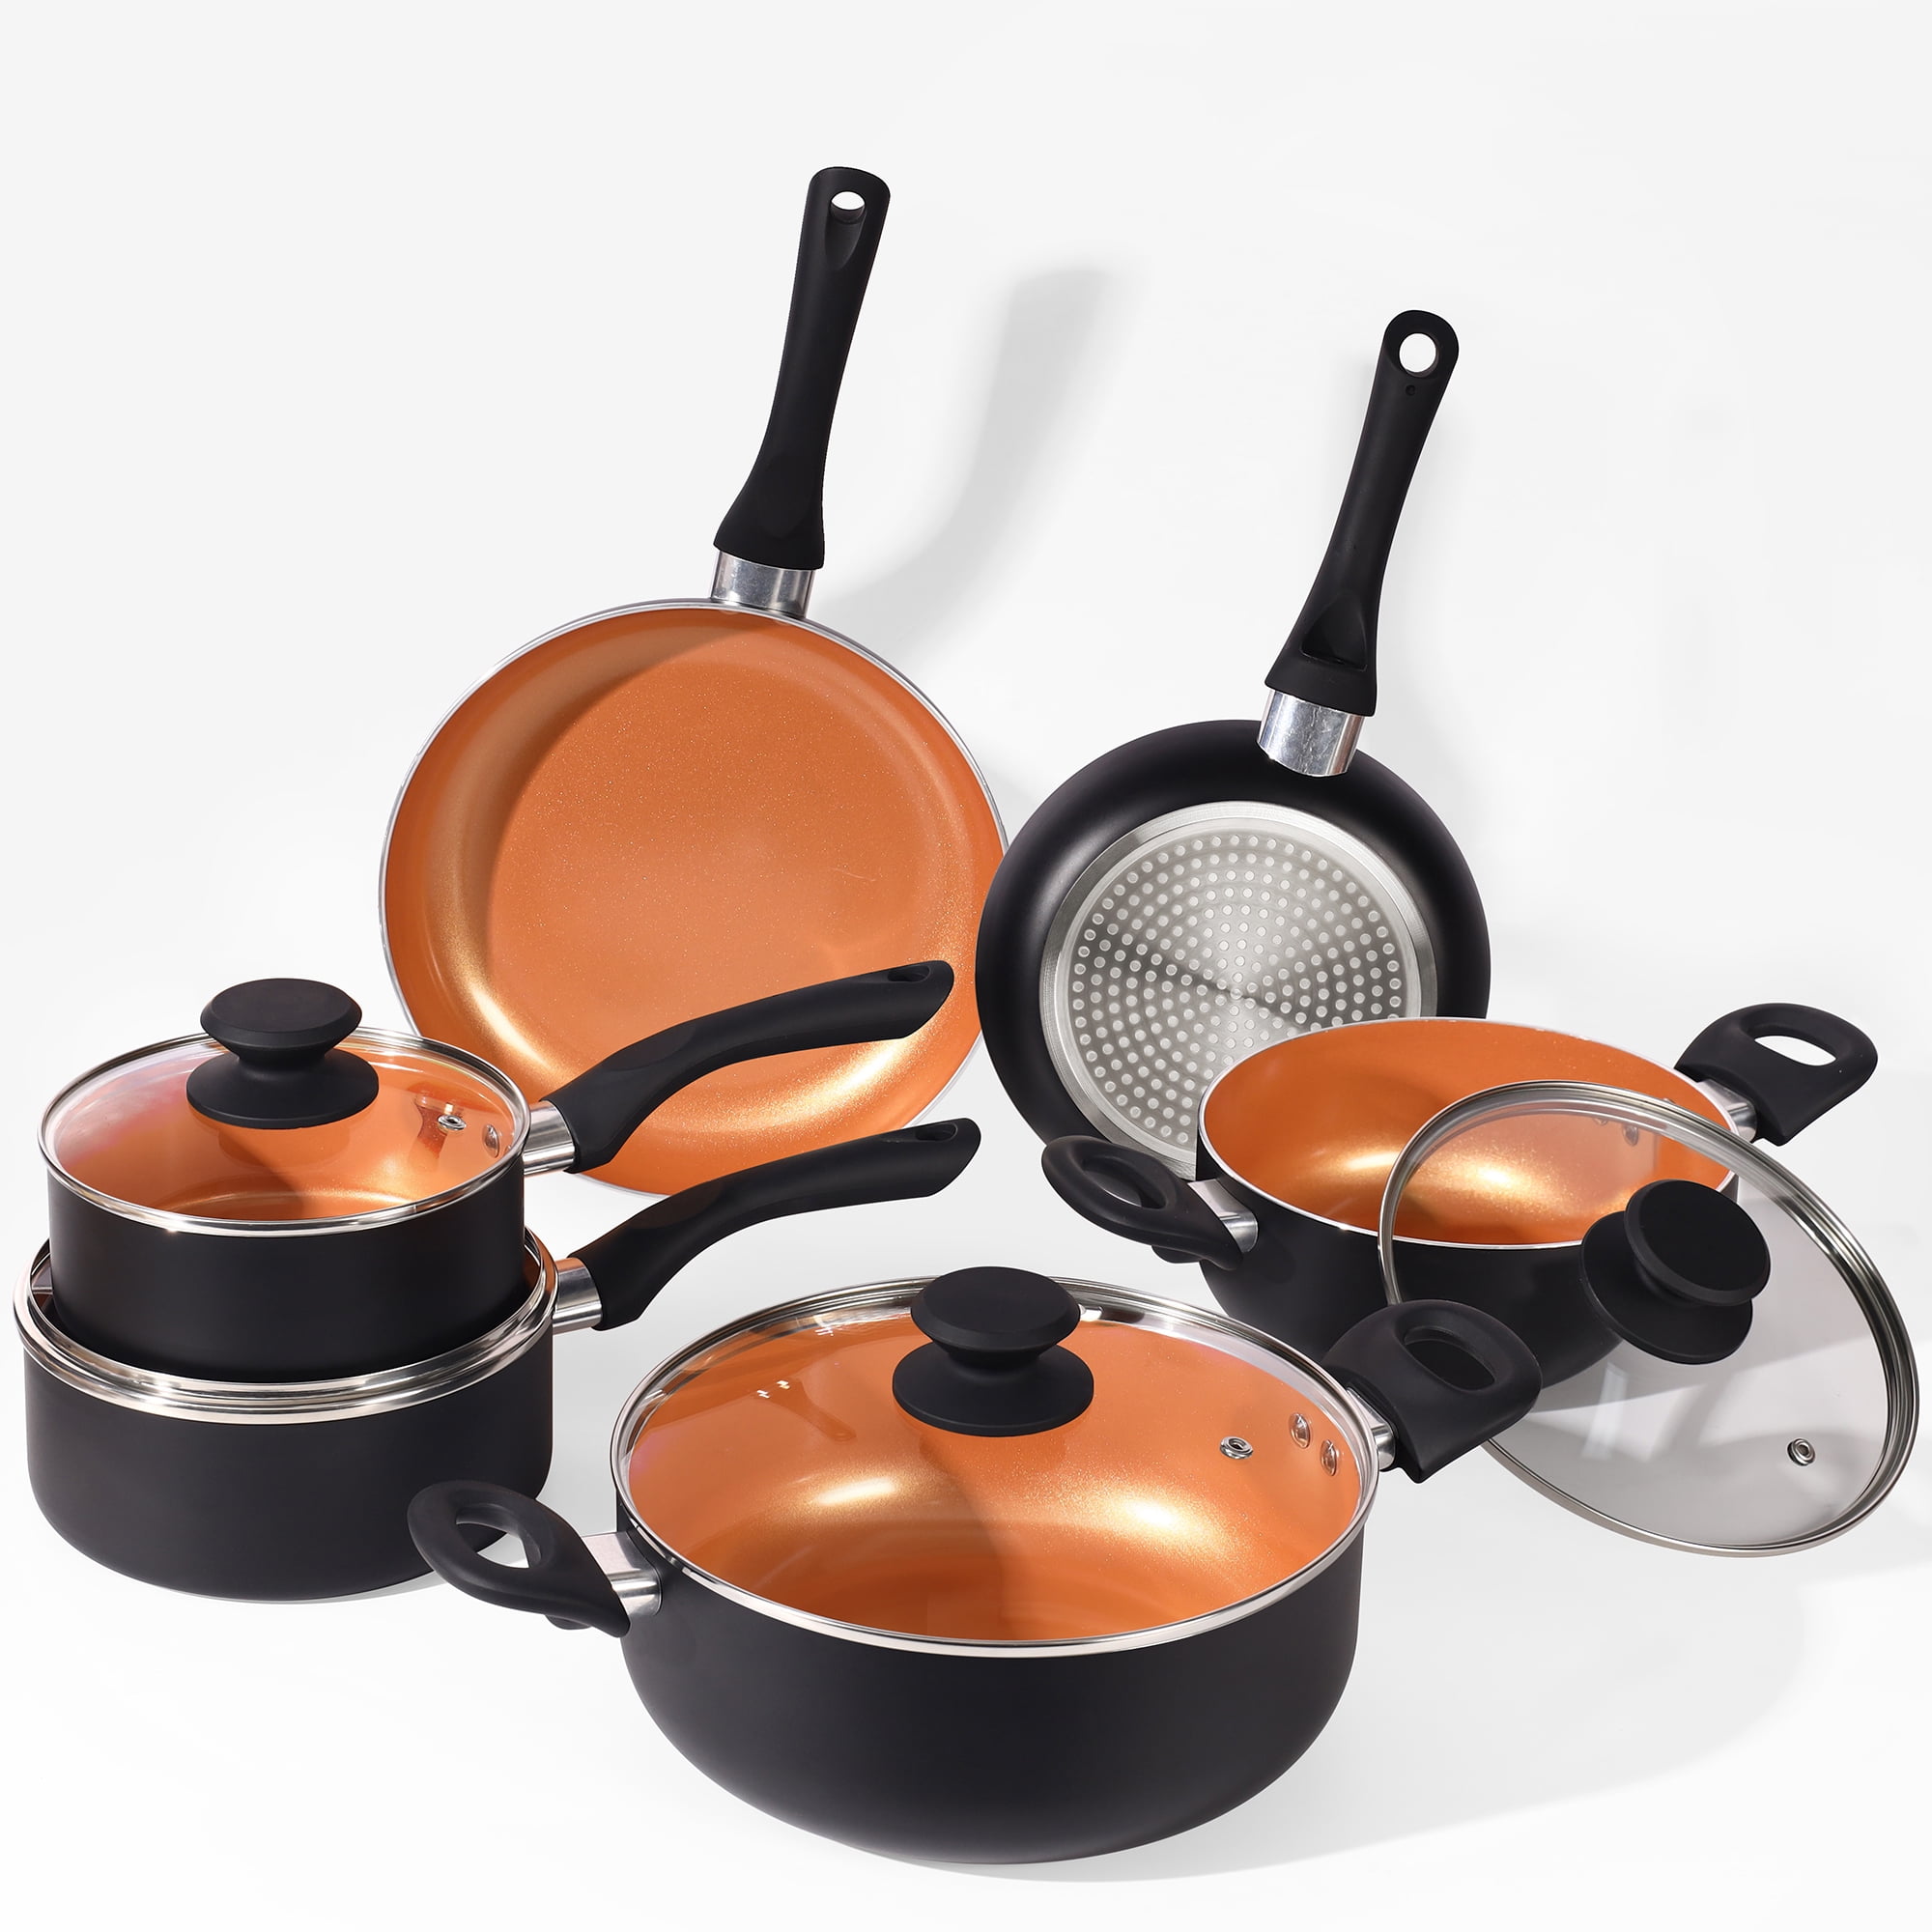 Scafild | 10-Piece Ceramic Nonstick Aluminum Cookware Set - Black & Copper